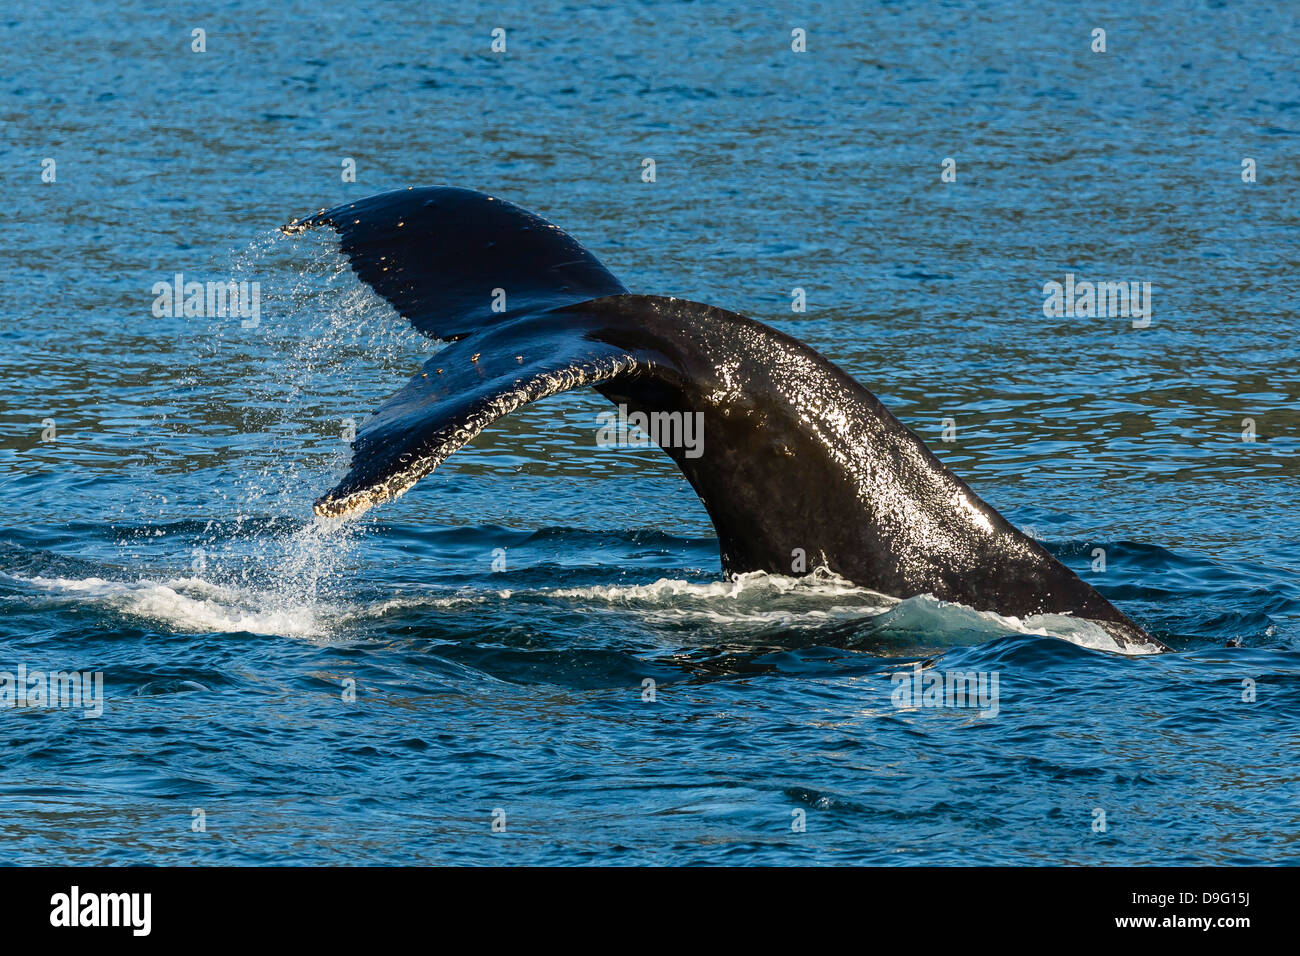 Des profils baleine à bosse (Megaptera novaeangliae) jusqu'à la nageoire caudale, plongée, des Neiges carte Sud de l'Alaska, USA Banque D'Images